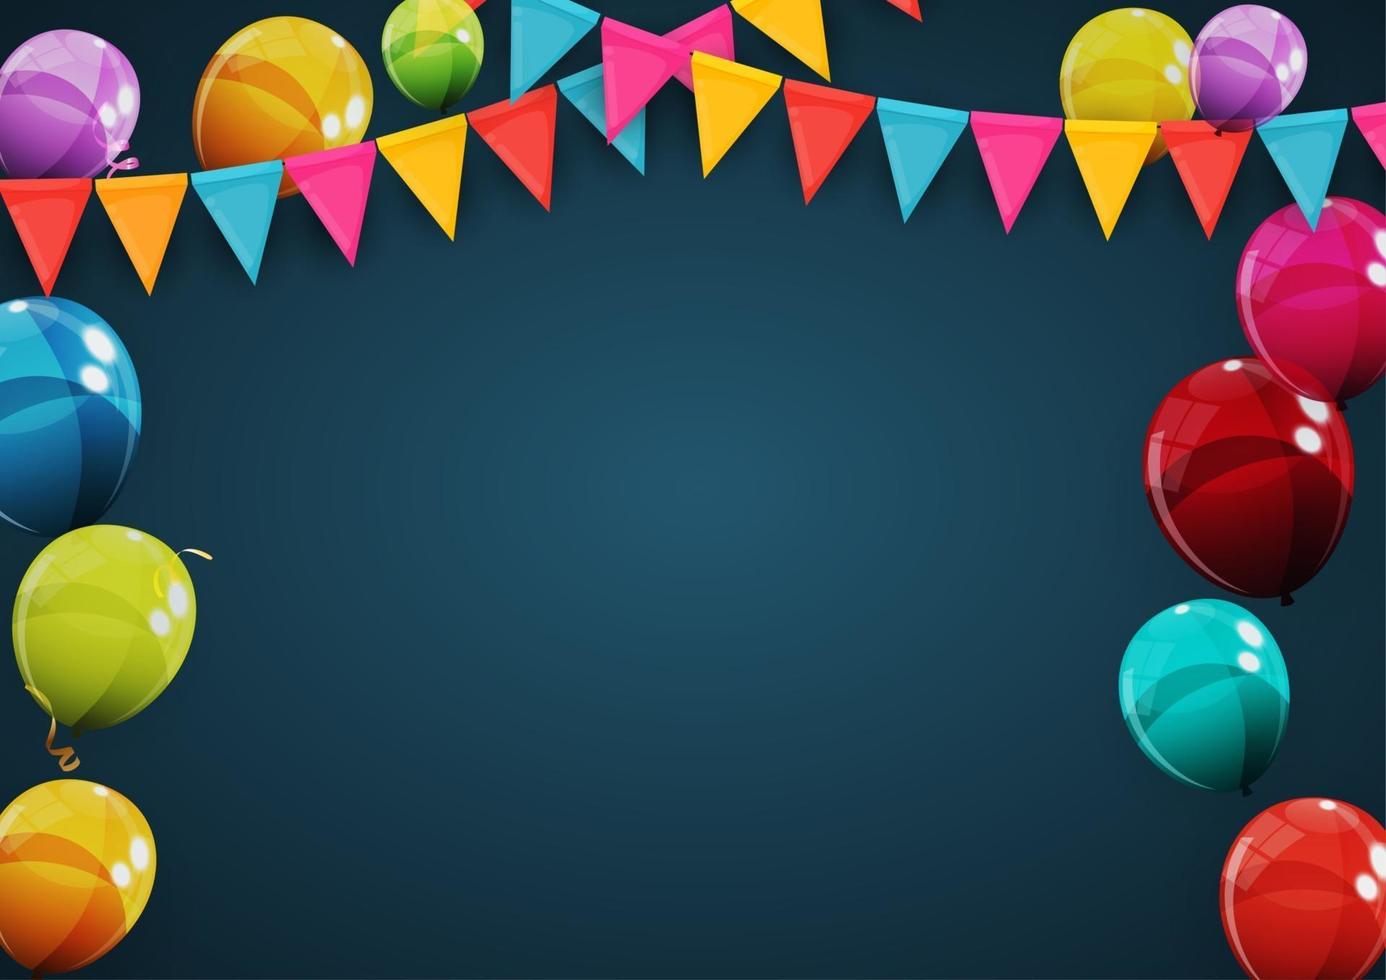 gelukkige verjaardag vakantie partij achtergrond met vlaggen en ballonnen. vector illustratie